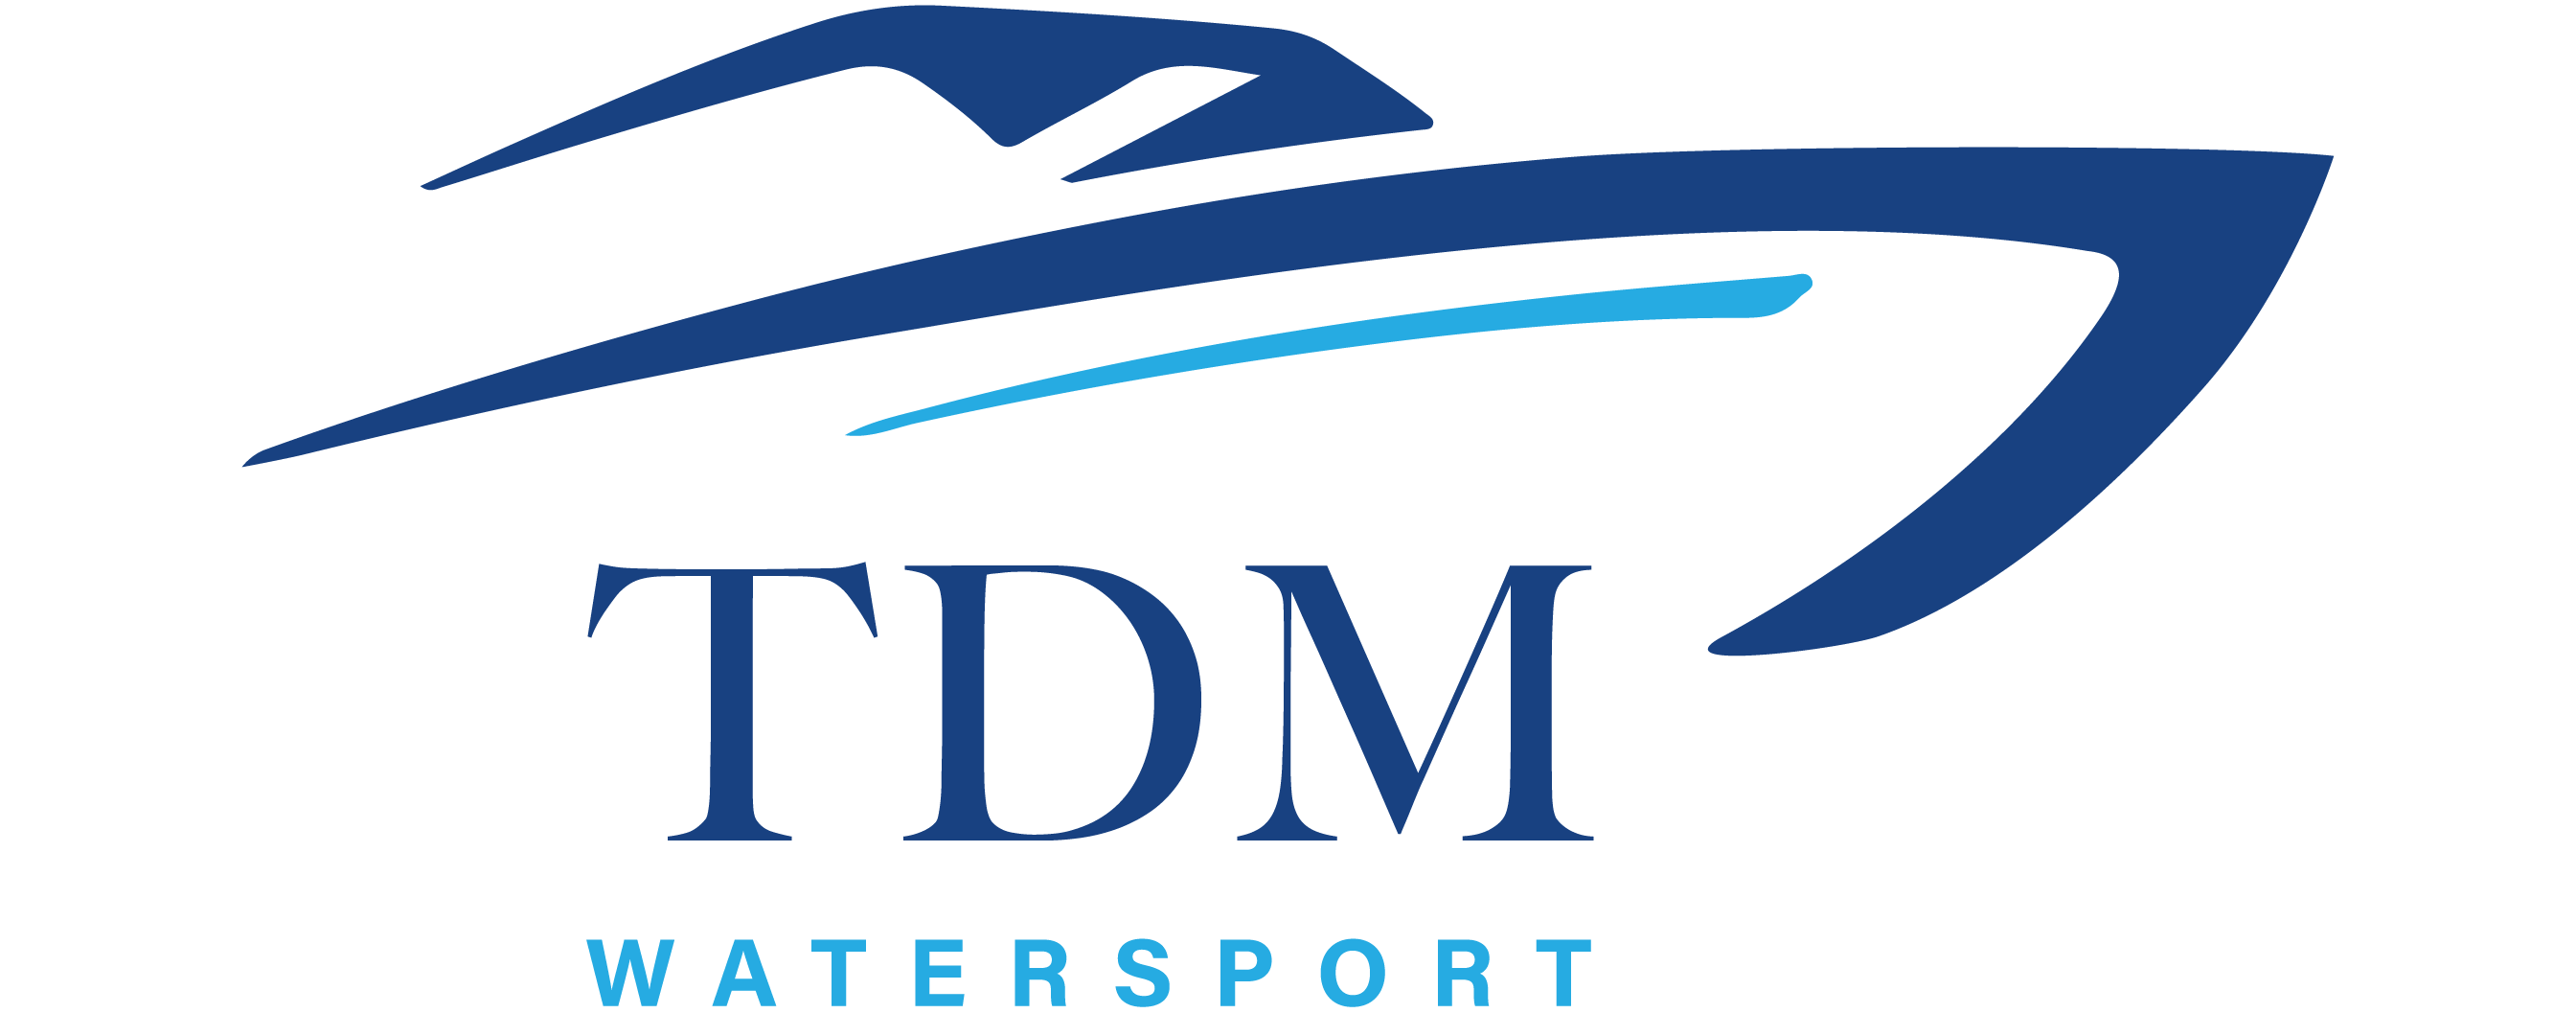 TDM Watersport